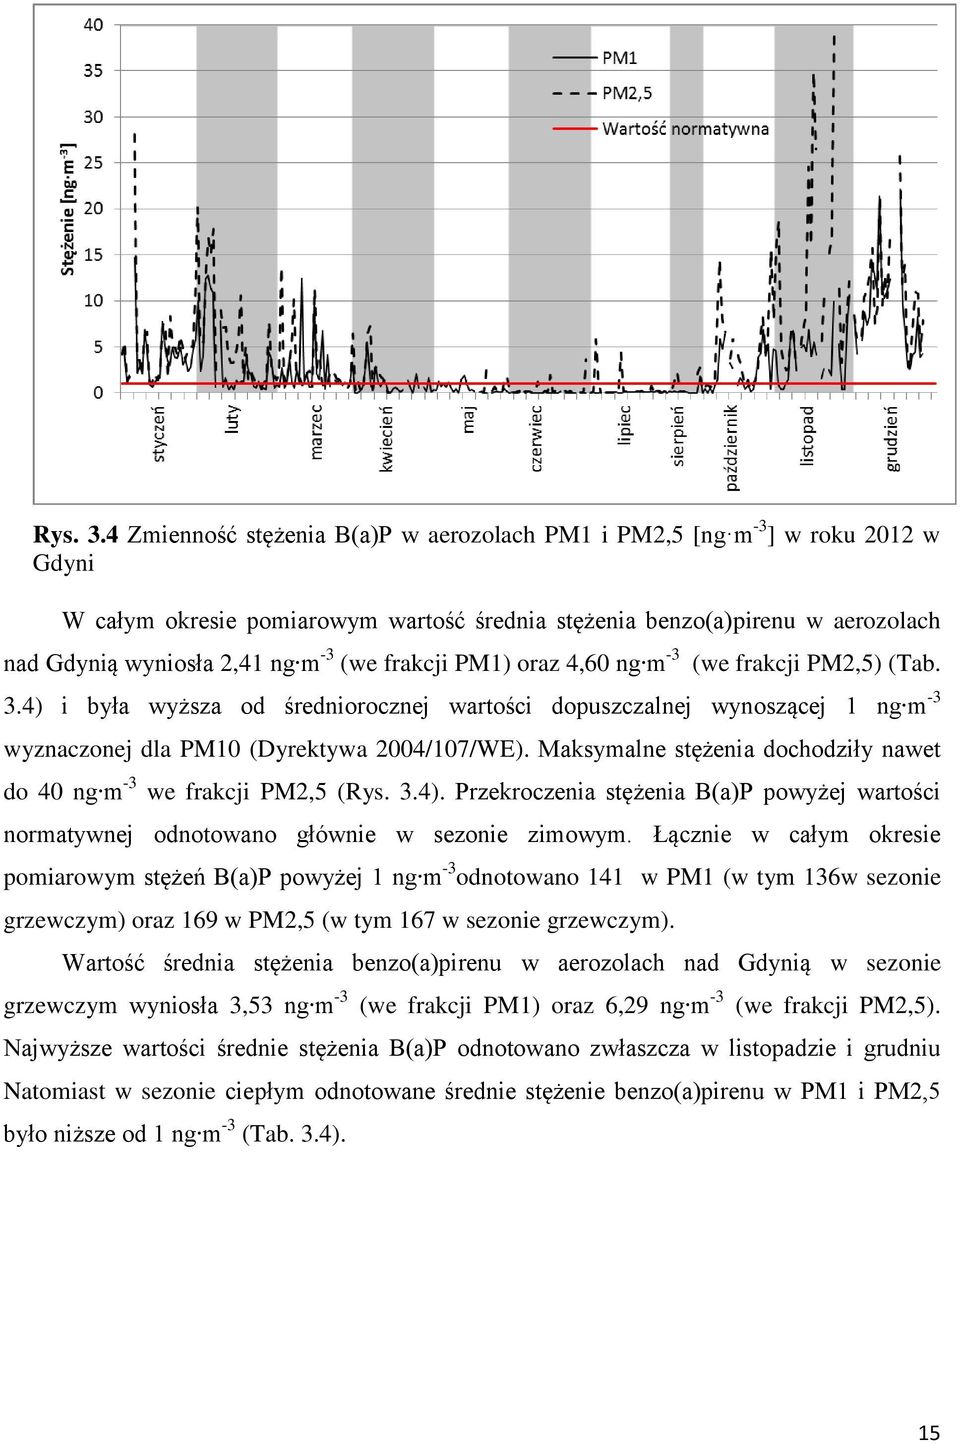 oraz 4,60 g m -3 (we frakcji PM2,5) (Tab. 3.4) i była wyższa od średioroczej wartości dopuszczalej wyoszącej 1 g m -3 wyzaczoej dla PM10 (Dyrektywa 2004/107/WE).